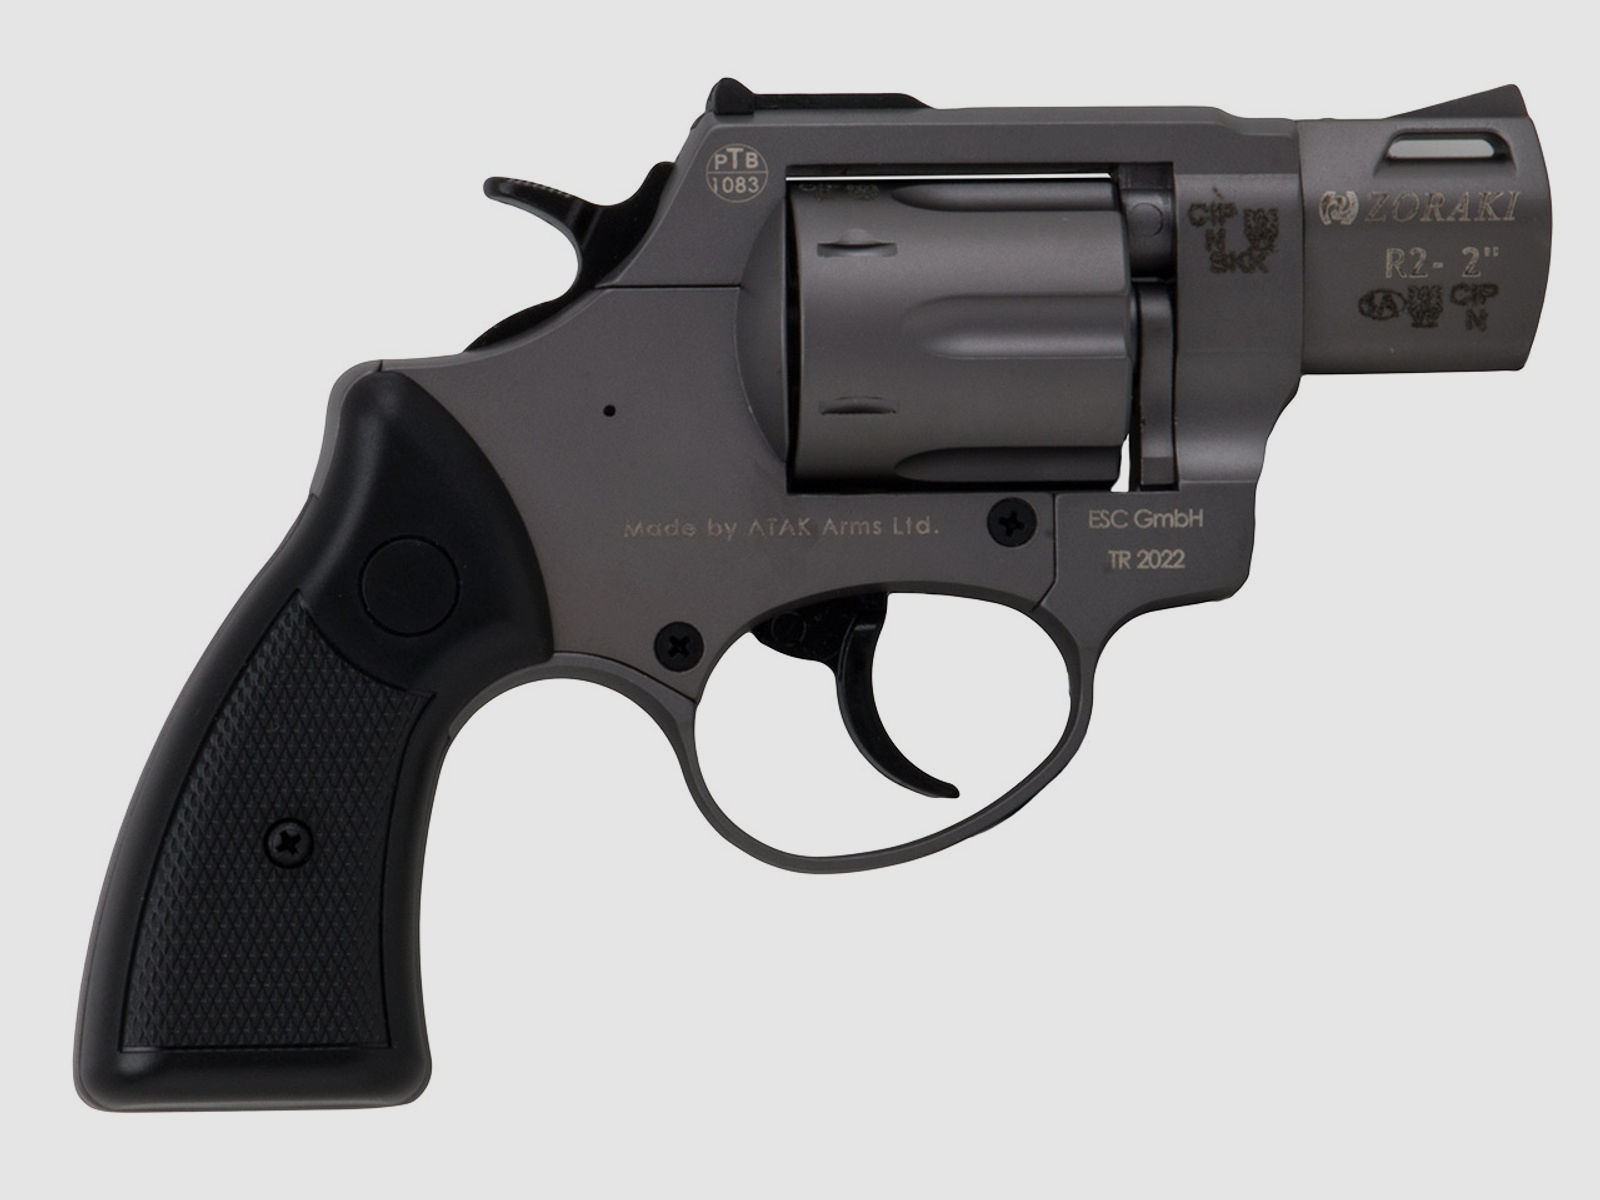 Schreckschuss Revolver Zoraki R2 Titan 2 Zoll PTB 1083 Kaliber 9 mm R.K. (P18)